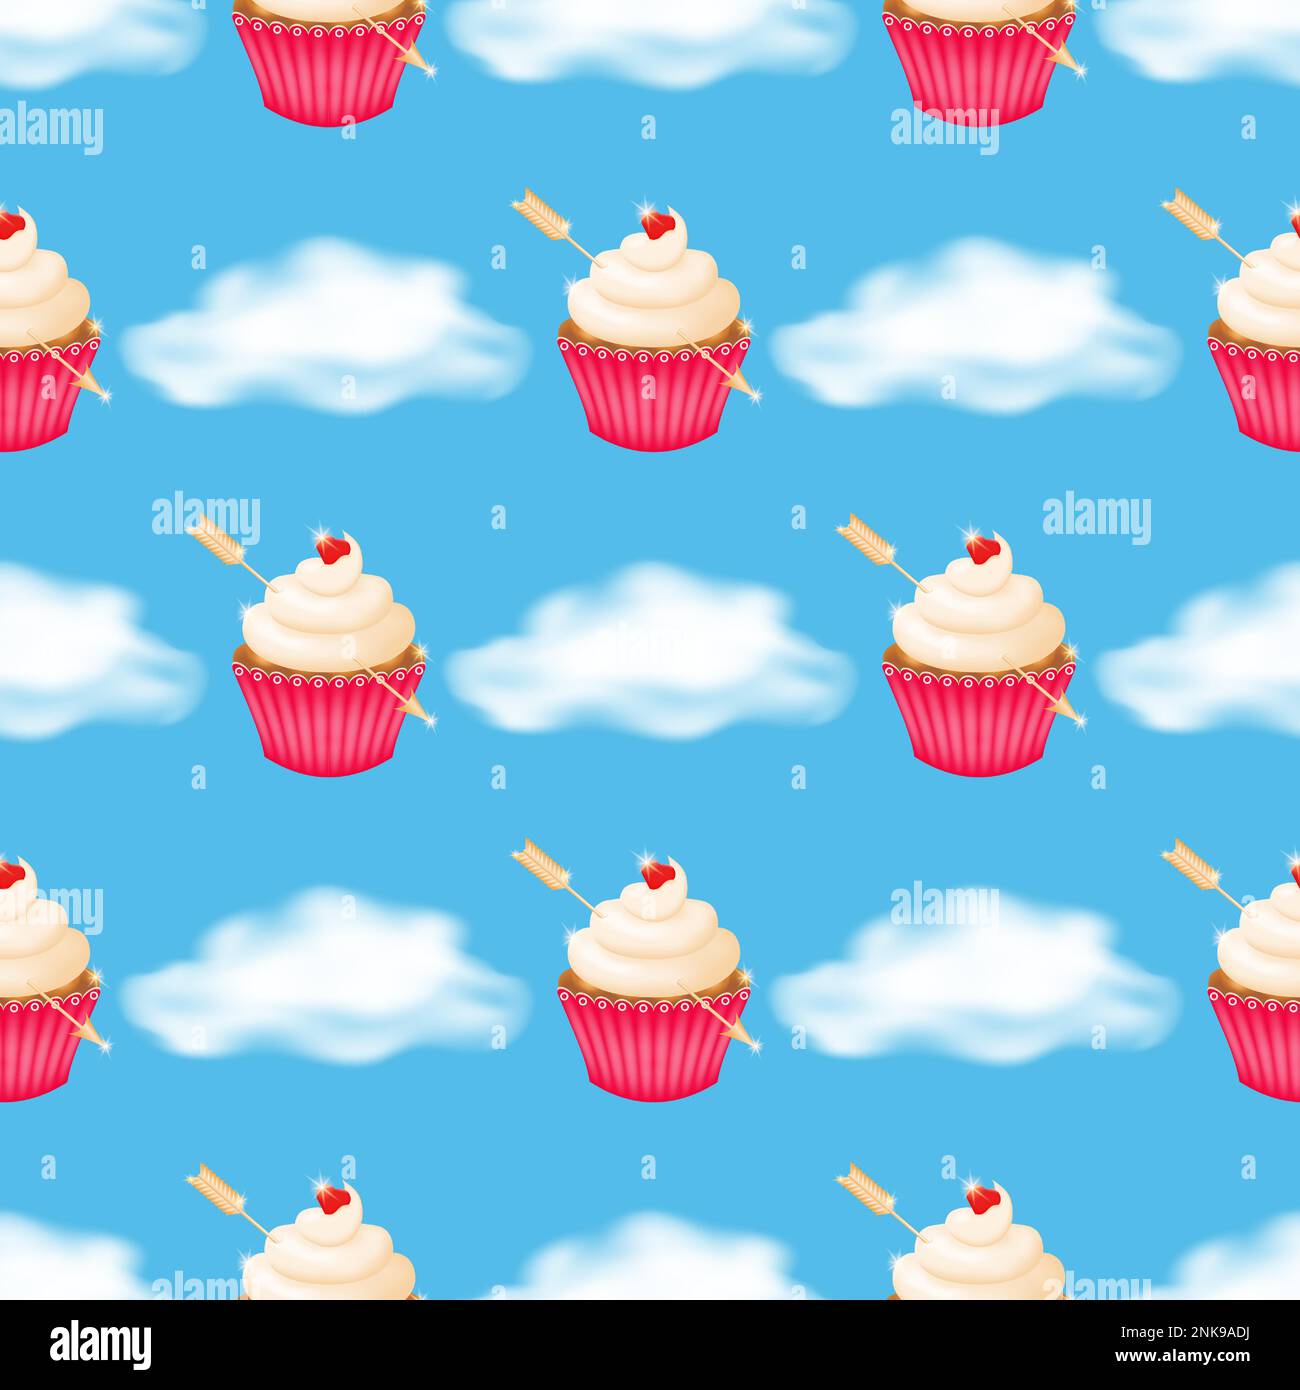 Flauschige Wolken auf blauem Hintergrund mit einem nahtlosen Muster köstlicher Cupcakes garniert mit Schlagsahne in einem pinkfarbenen, gebördelten Pappbecher, mit einem g durchbohrt Stock Vektor